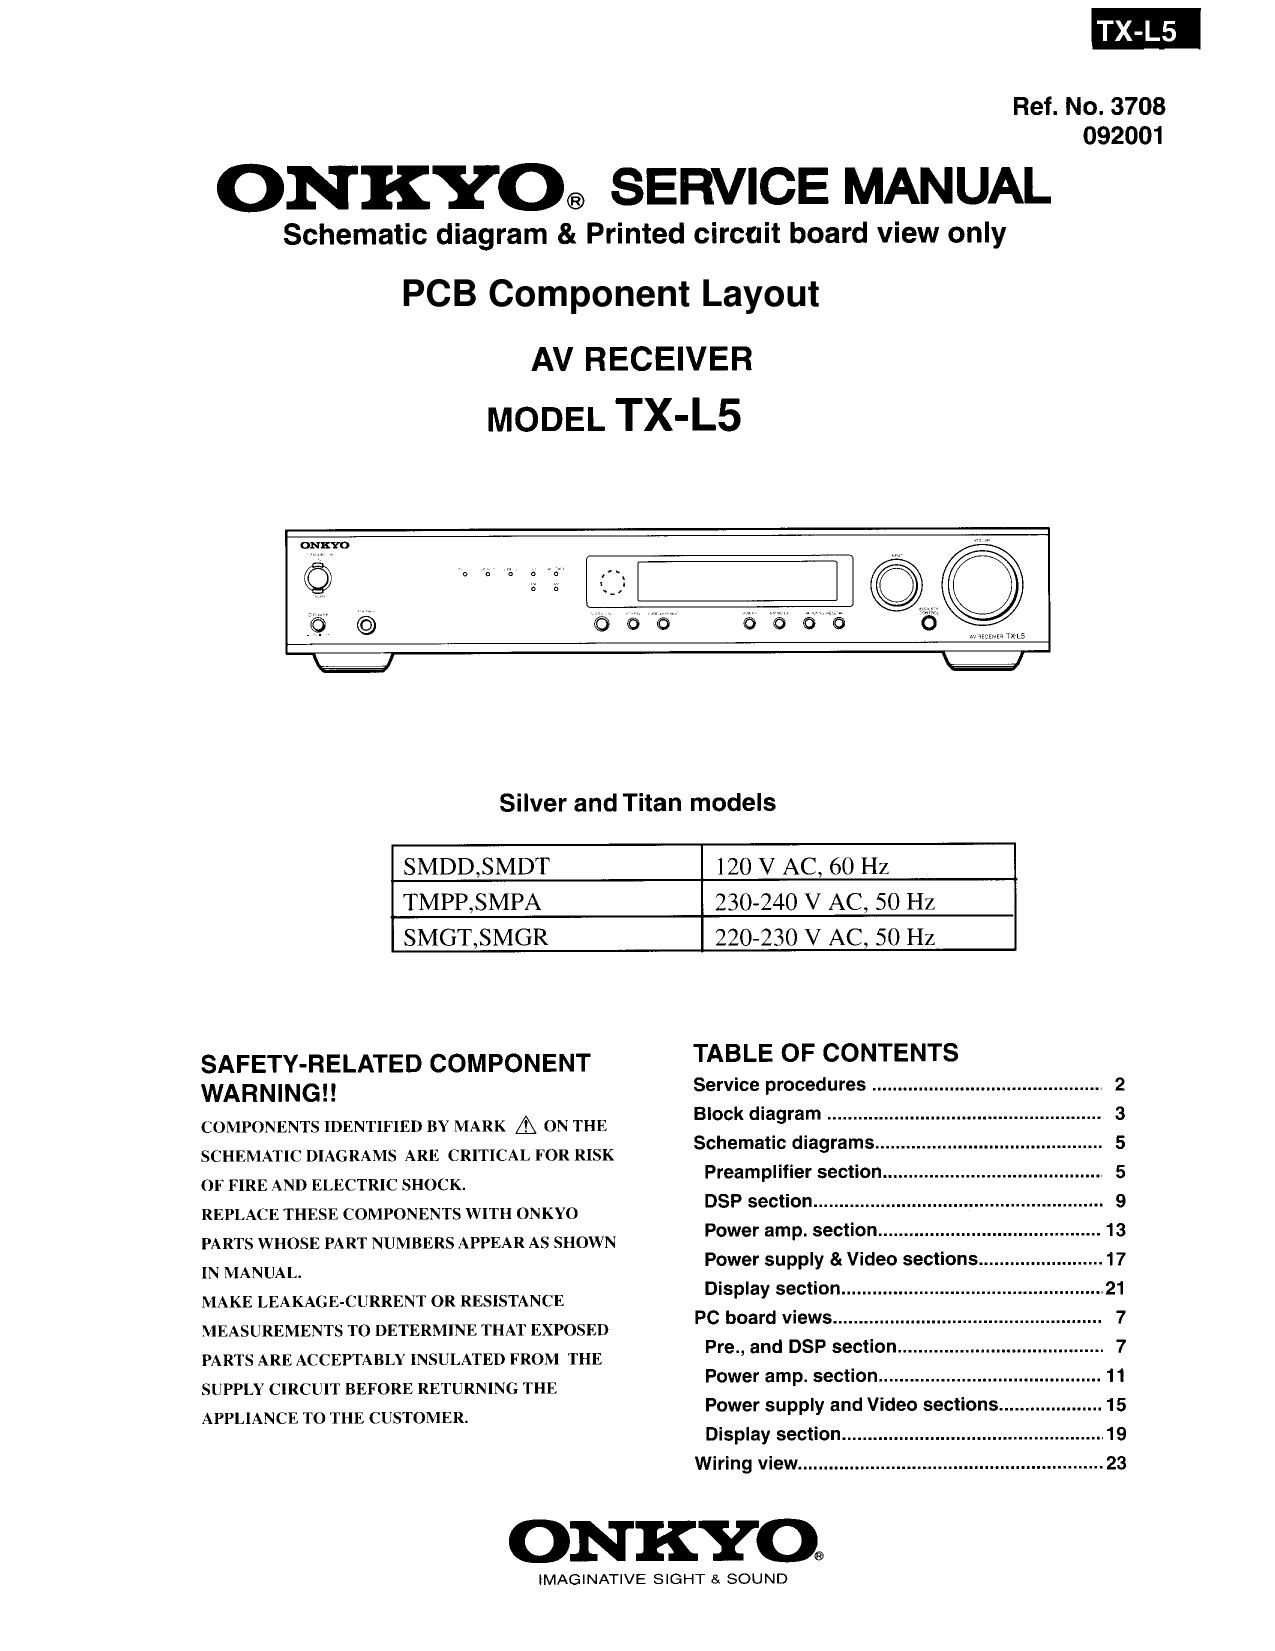 Onkyo TXL 5 Service Manual 2